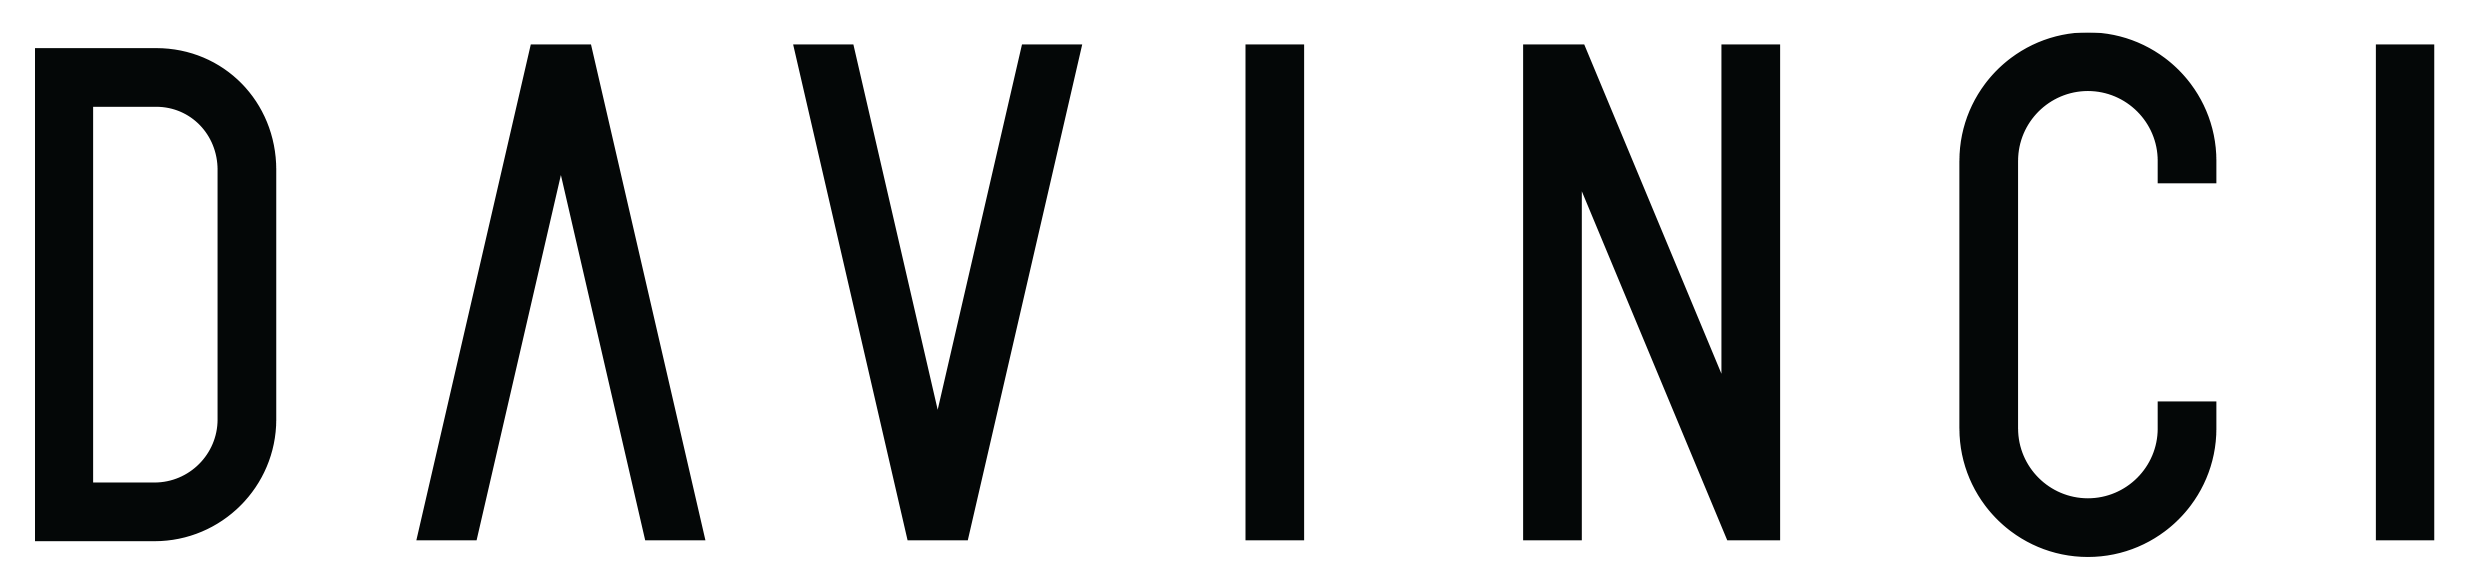 DaVinci Vaporizers Logo